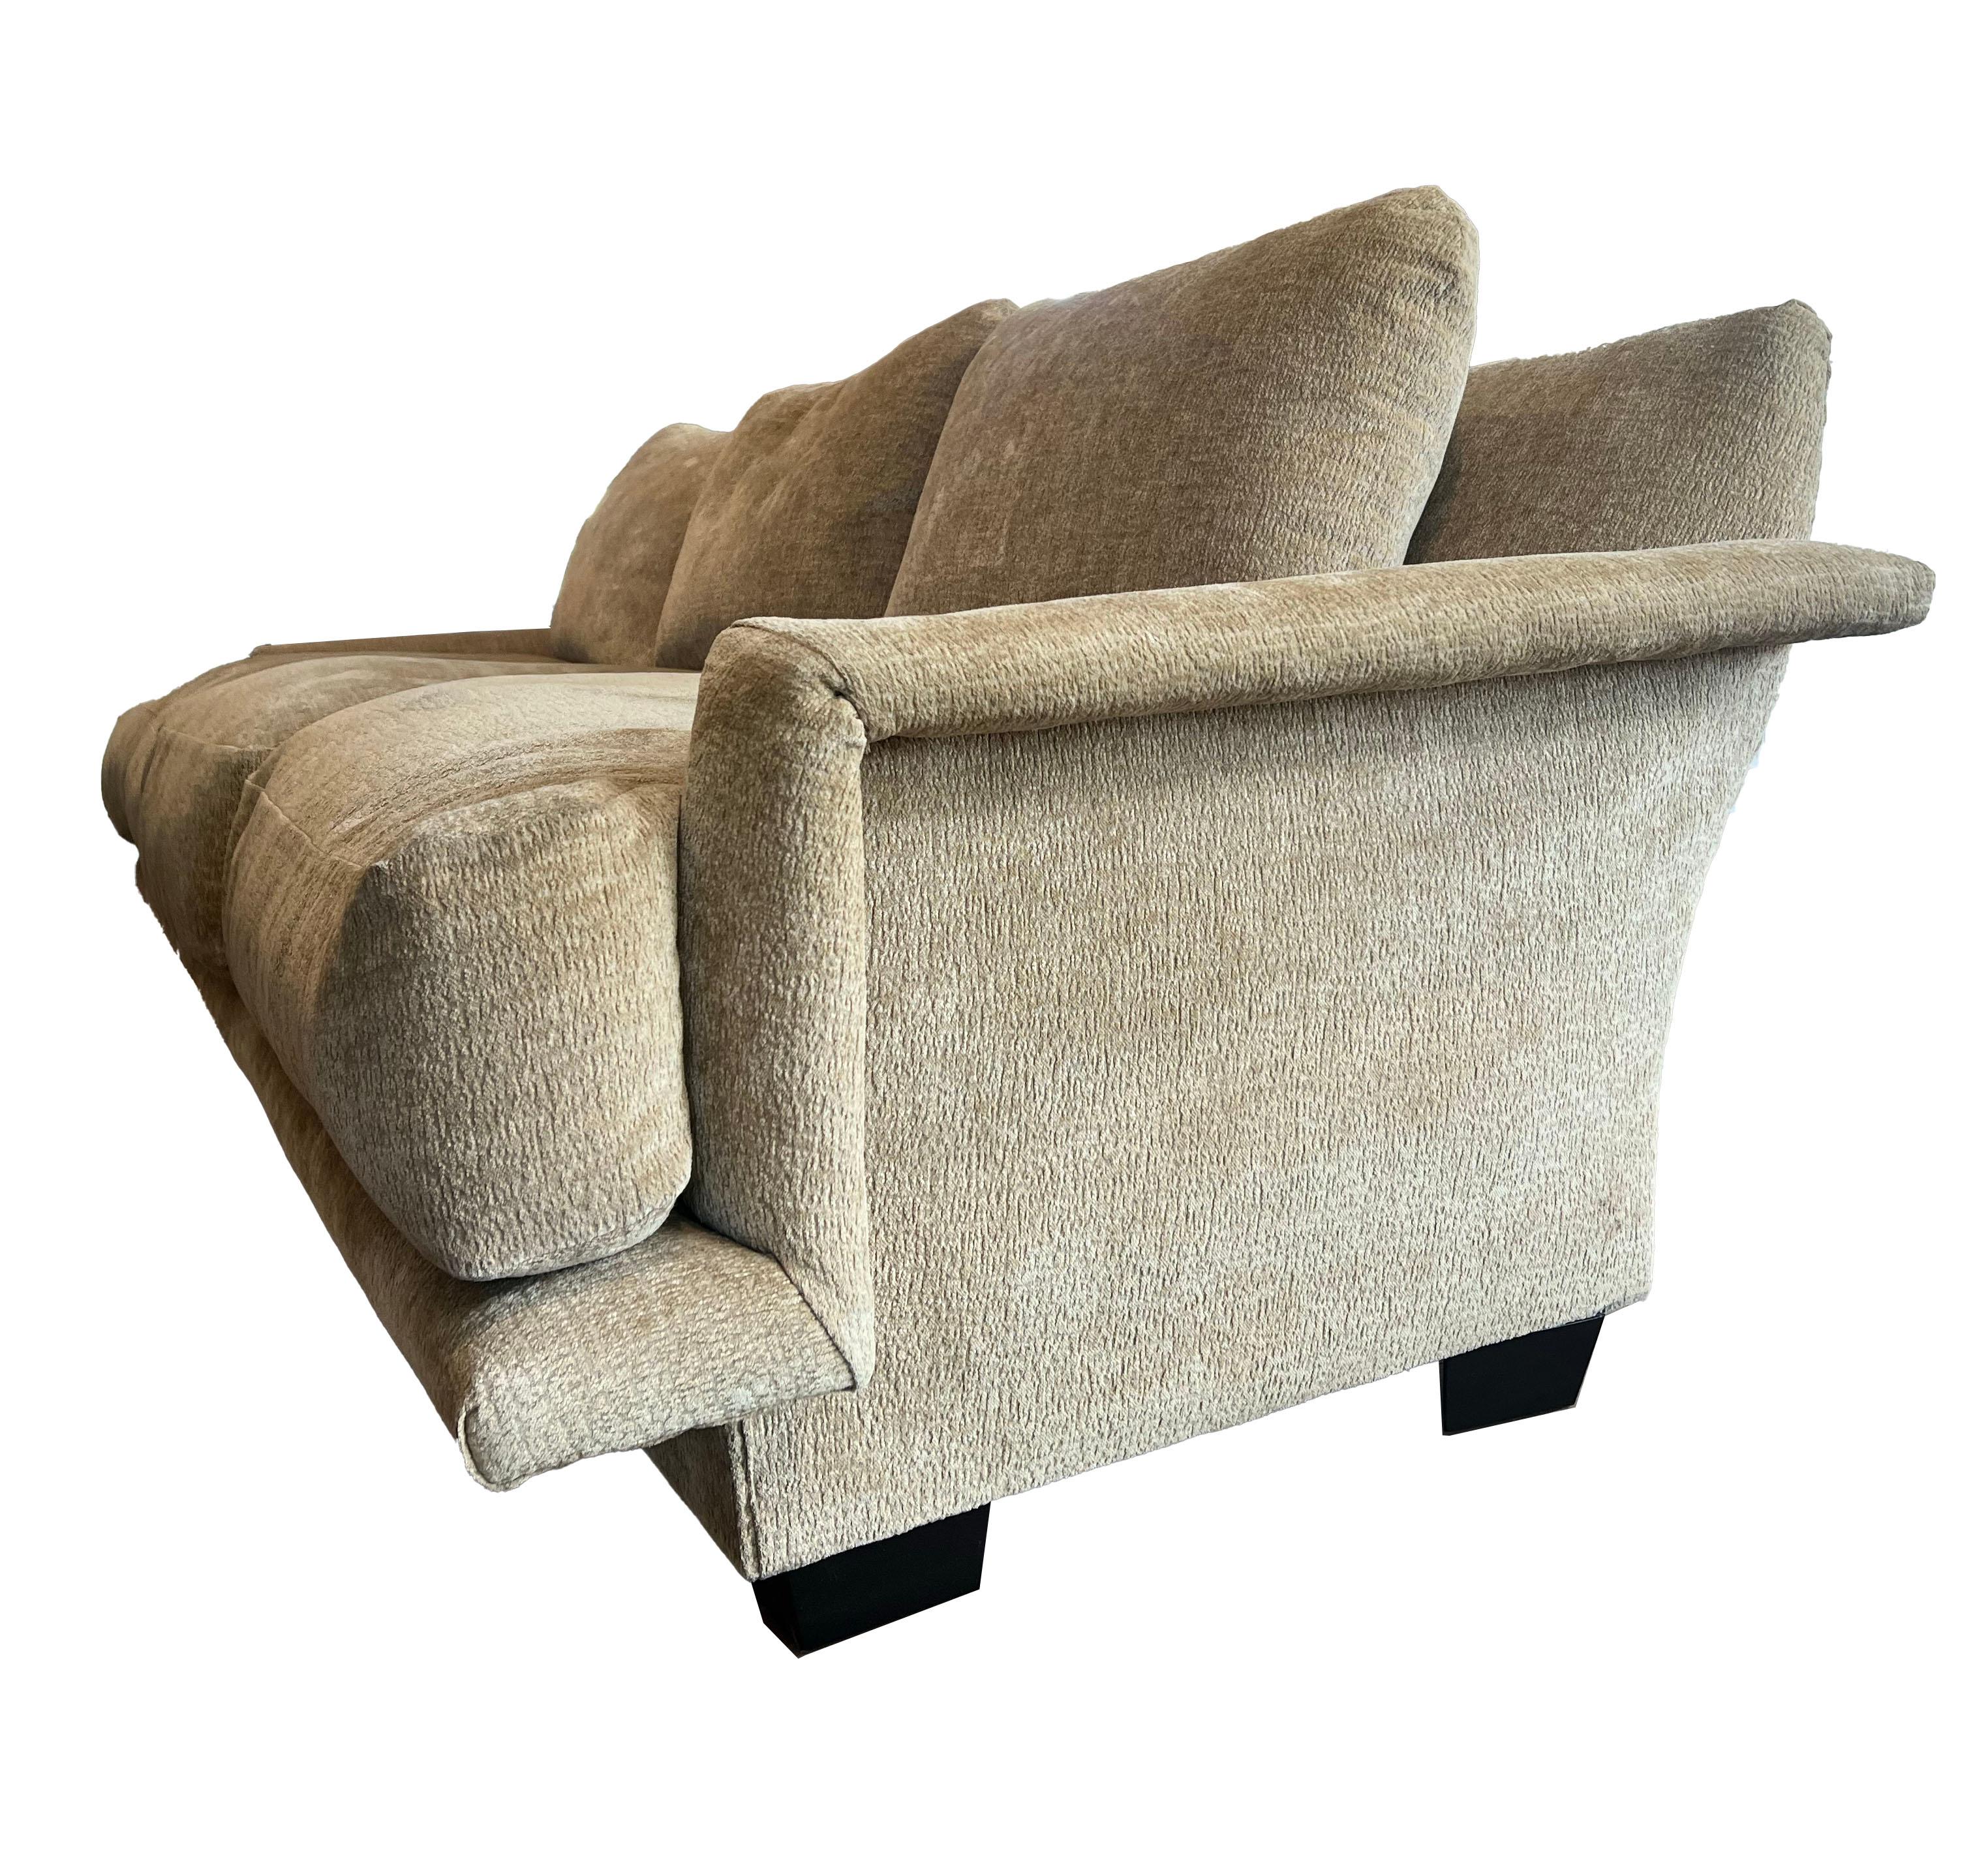 Der Inbegriff von Raffinesse - unser beigefarbenes, mit strukturiertem Samt gepolstertes 3-Sitzer-Sofa, eine Verschmelzung von Komfort und zeitgenössischem Design. Versinken Sie in Luxus mit den plüschigen Rückenkissen, die ein verwöhnendes